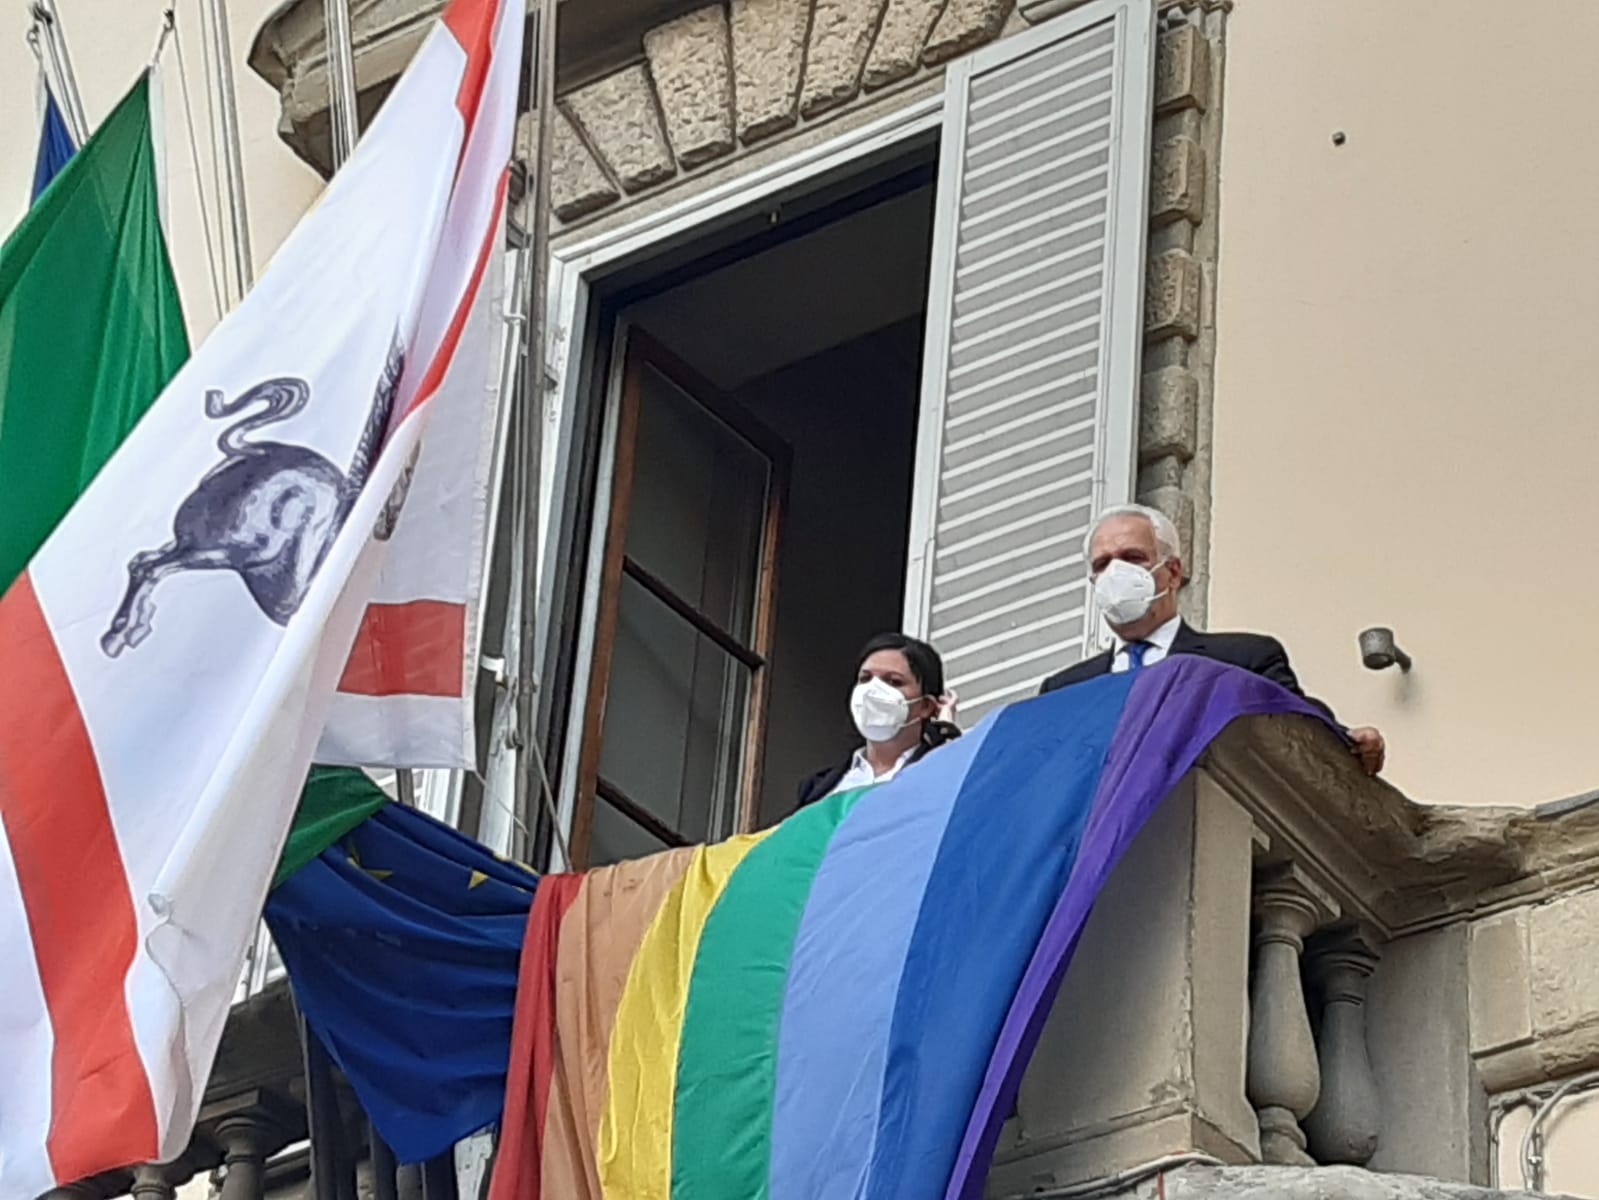 Giornata contro omofobia, la bandiera arcobaleno a Palazzo Strozzi S...